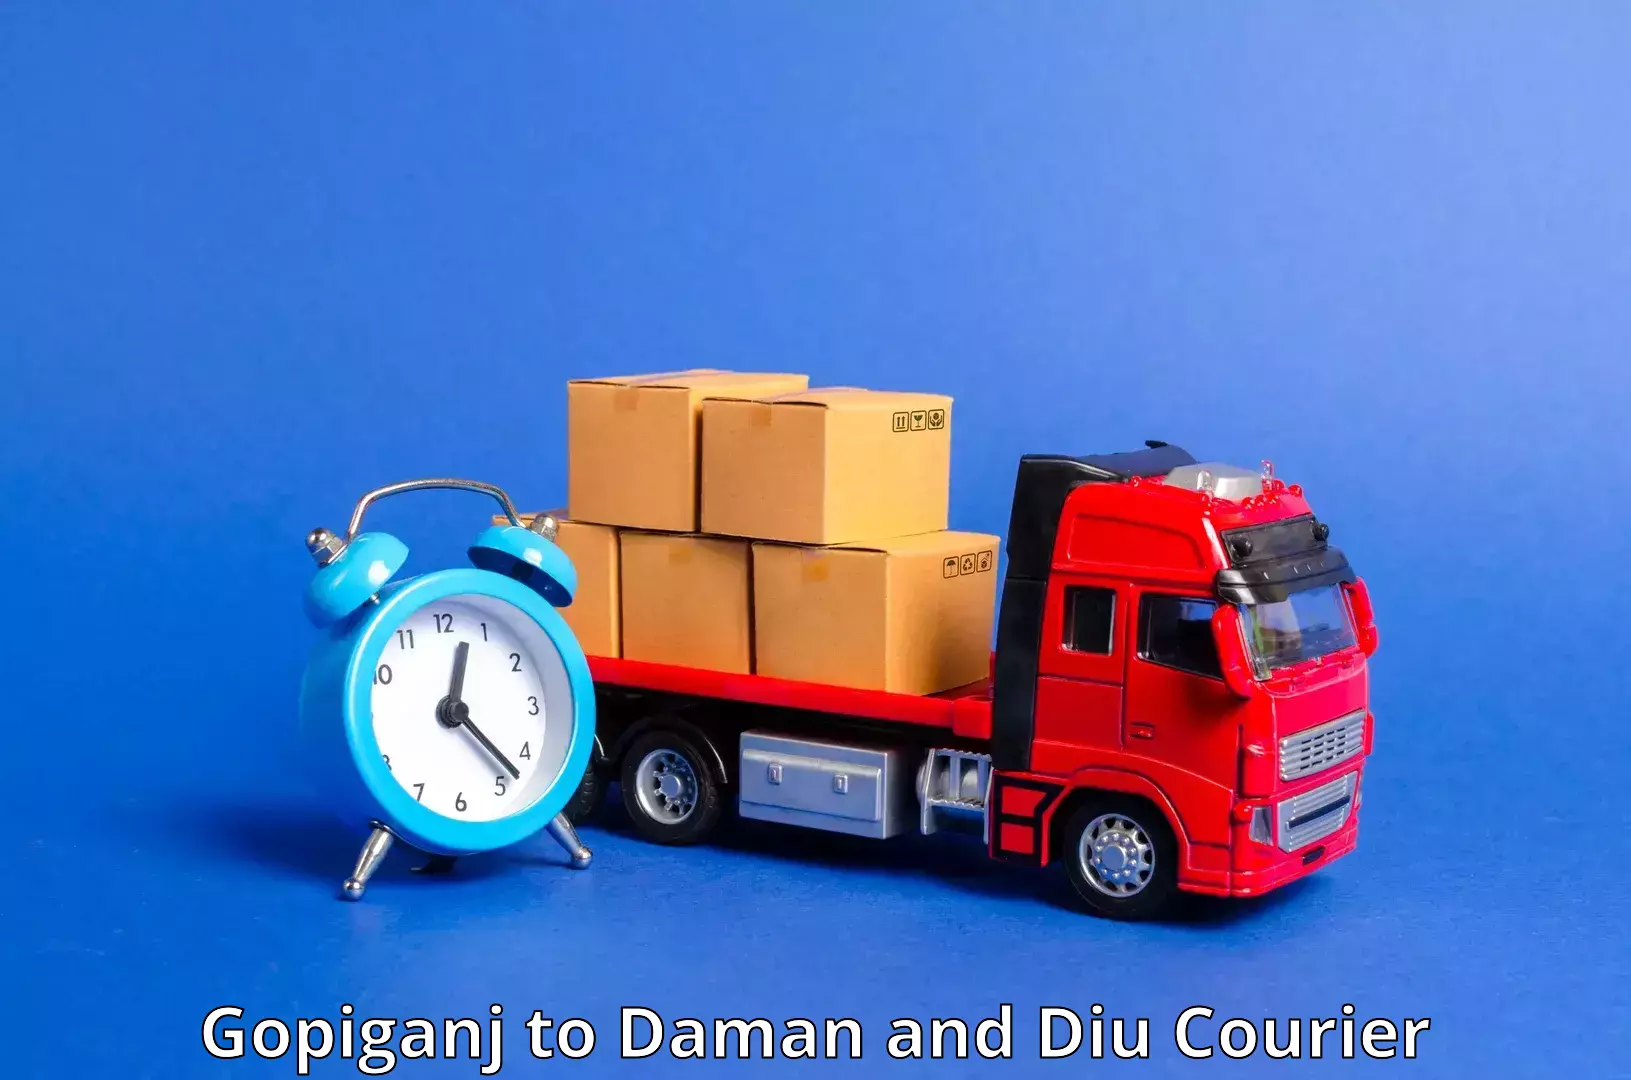 Express package handling Gopiganj to Daman and Diu